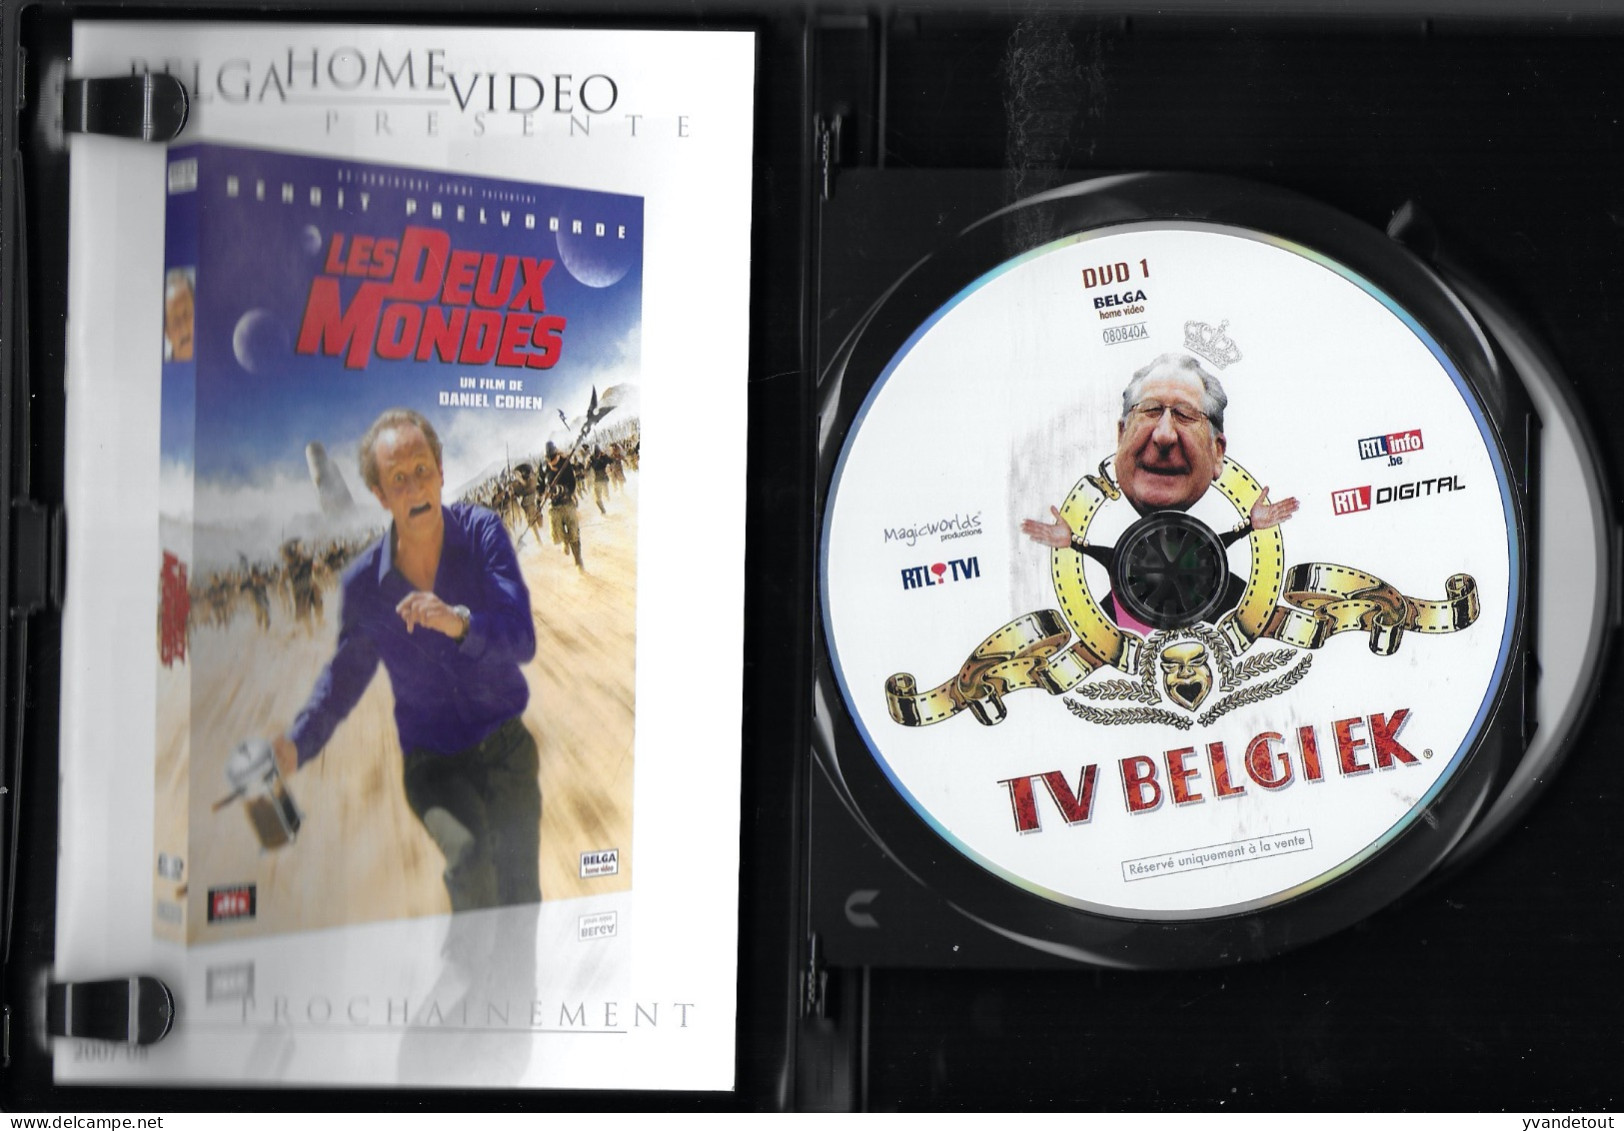 DVD - L'intégrale Des 2 Premières Saisons. TV Belgiek.  Humour. Comédie. Rare. Double DVD. Jaquette - TV-Serien